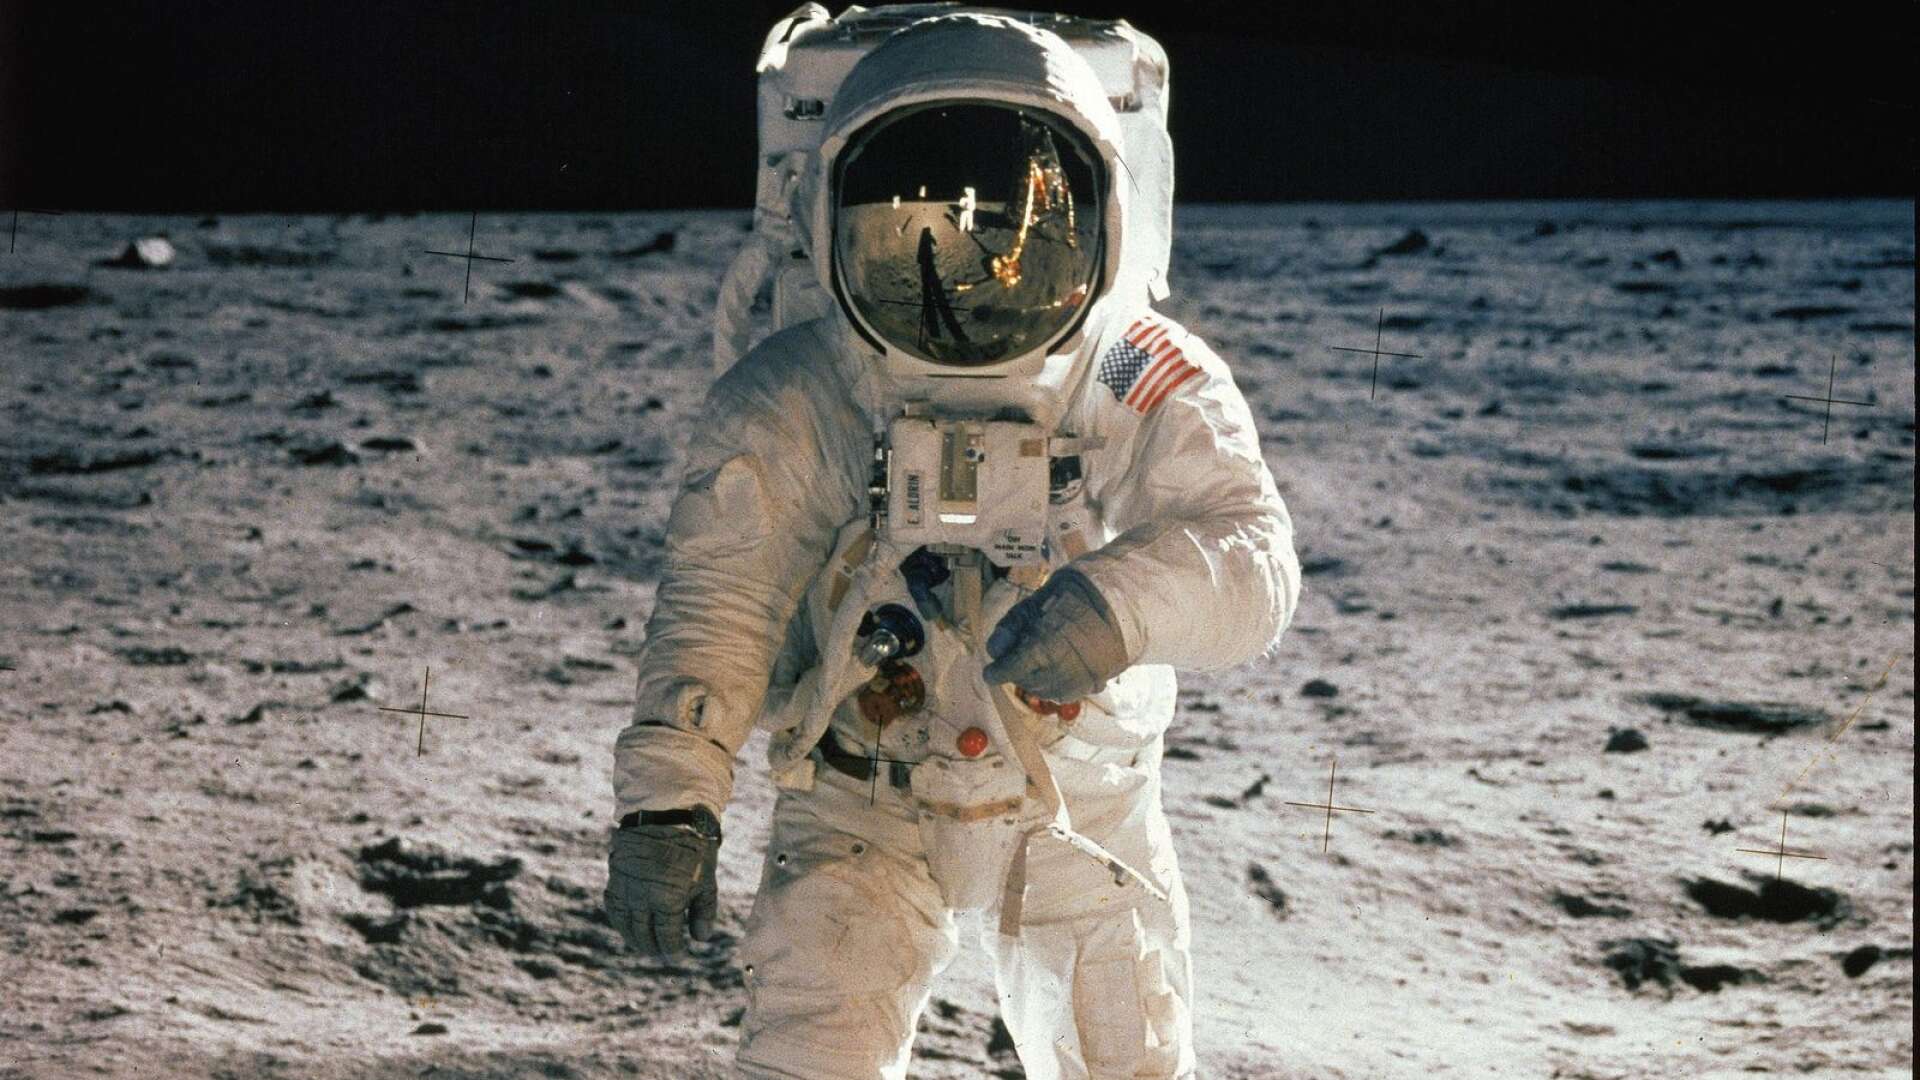 Klockan 21.17, 20 juli 1969 tog de mark. Och för första gången var det människor på månen. Inget annat ögonblick i rymdforskningens historia kan konkurrera med denna händelse, skriver TT:s Roland Johansson. 